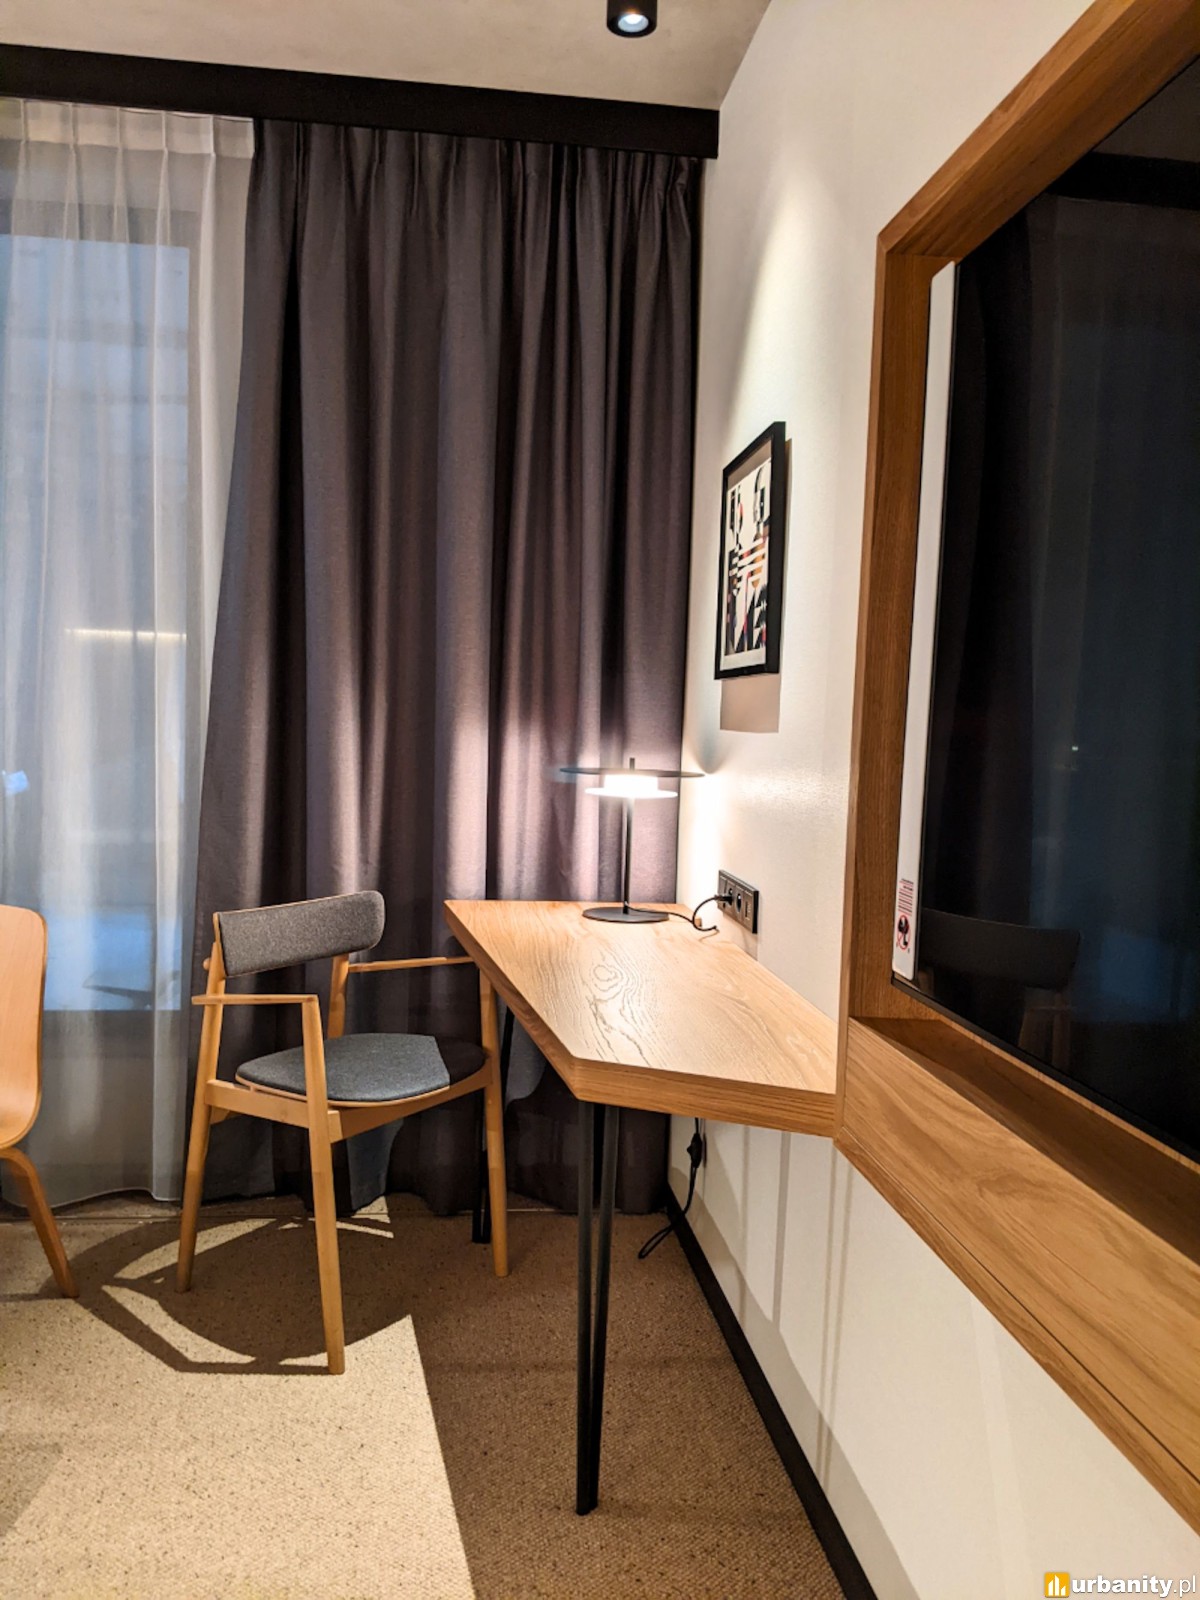 Qubus Hotel otwiera prototypowy pokój w Głogowie przed inauguracją w Katowicach